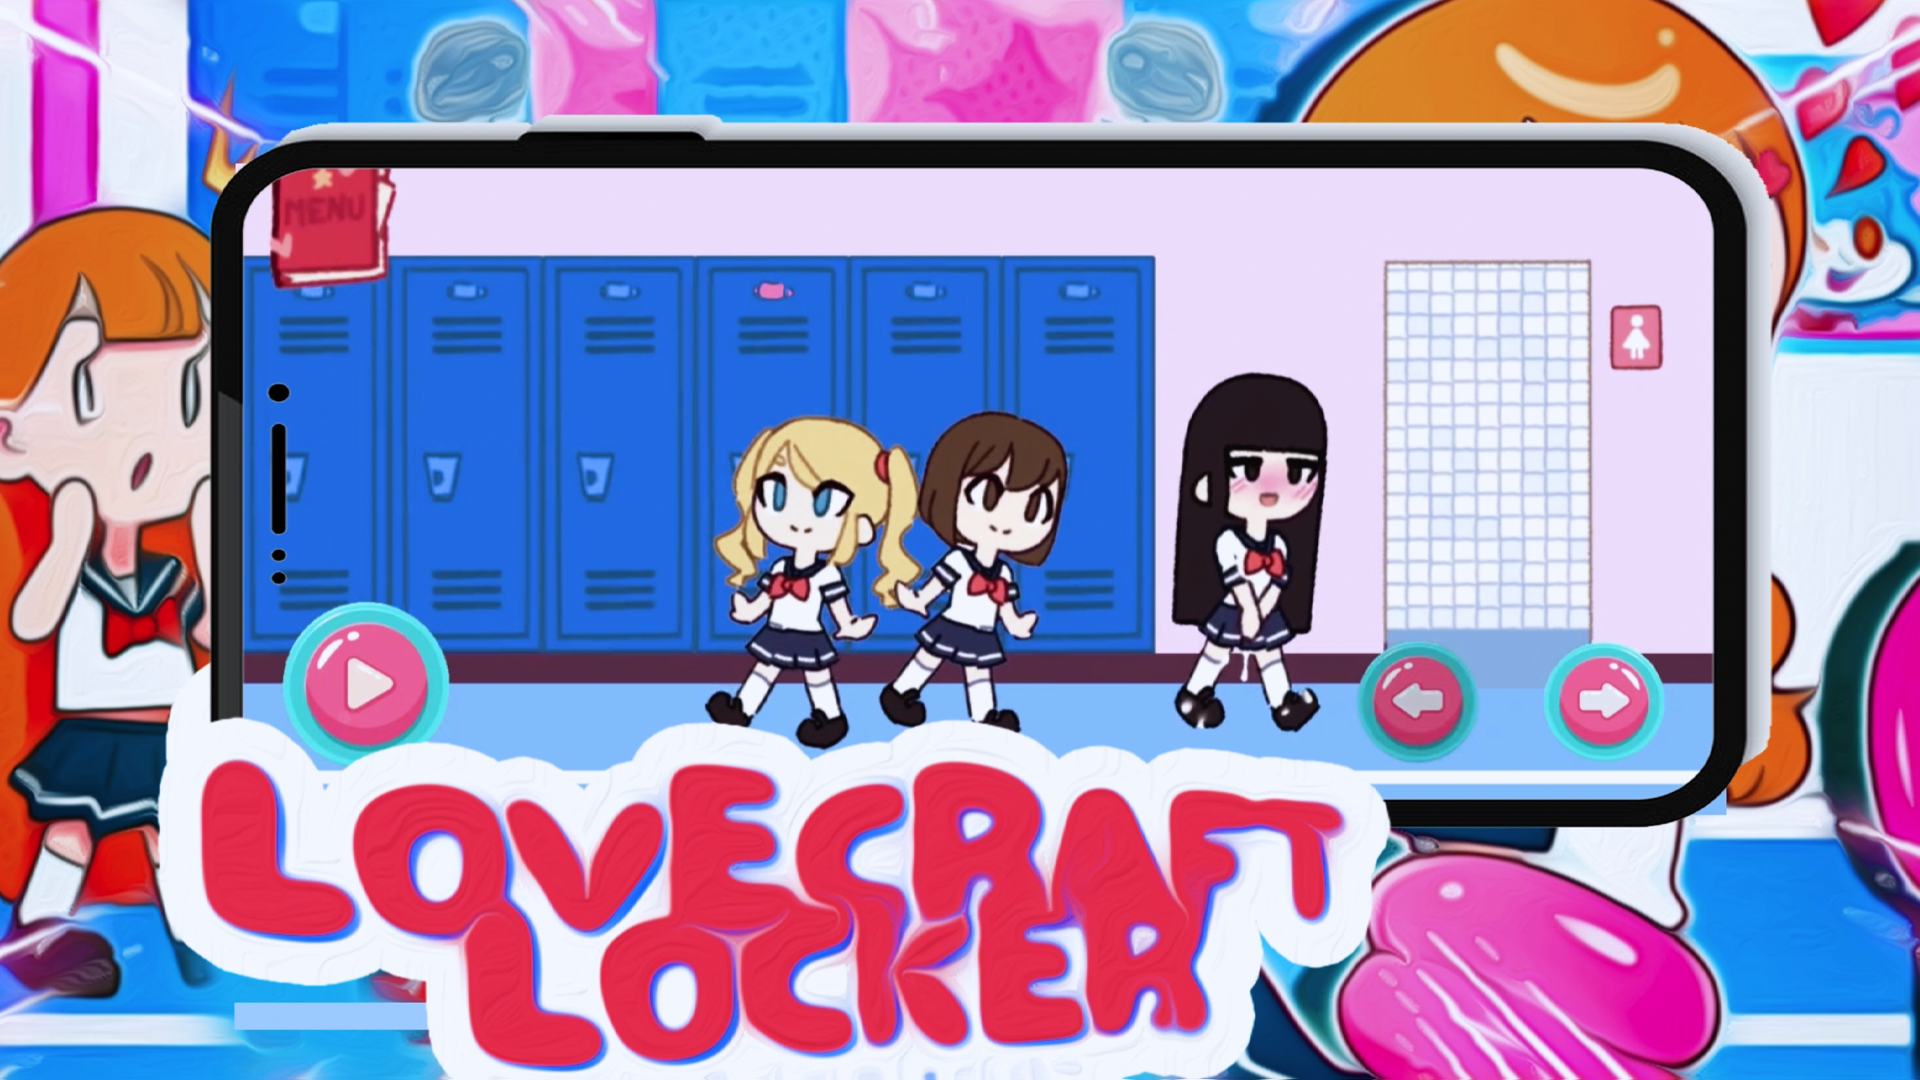 Screenshot 1 of ហ្គេម LoveCraft Locker 